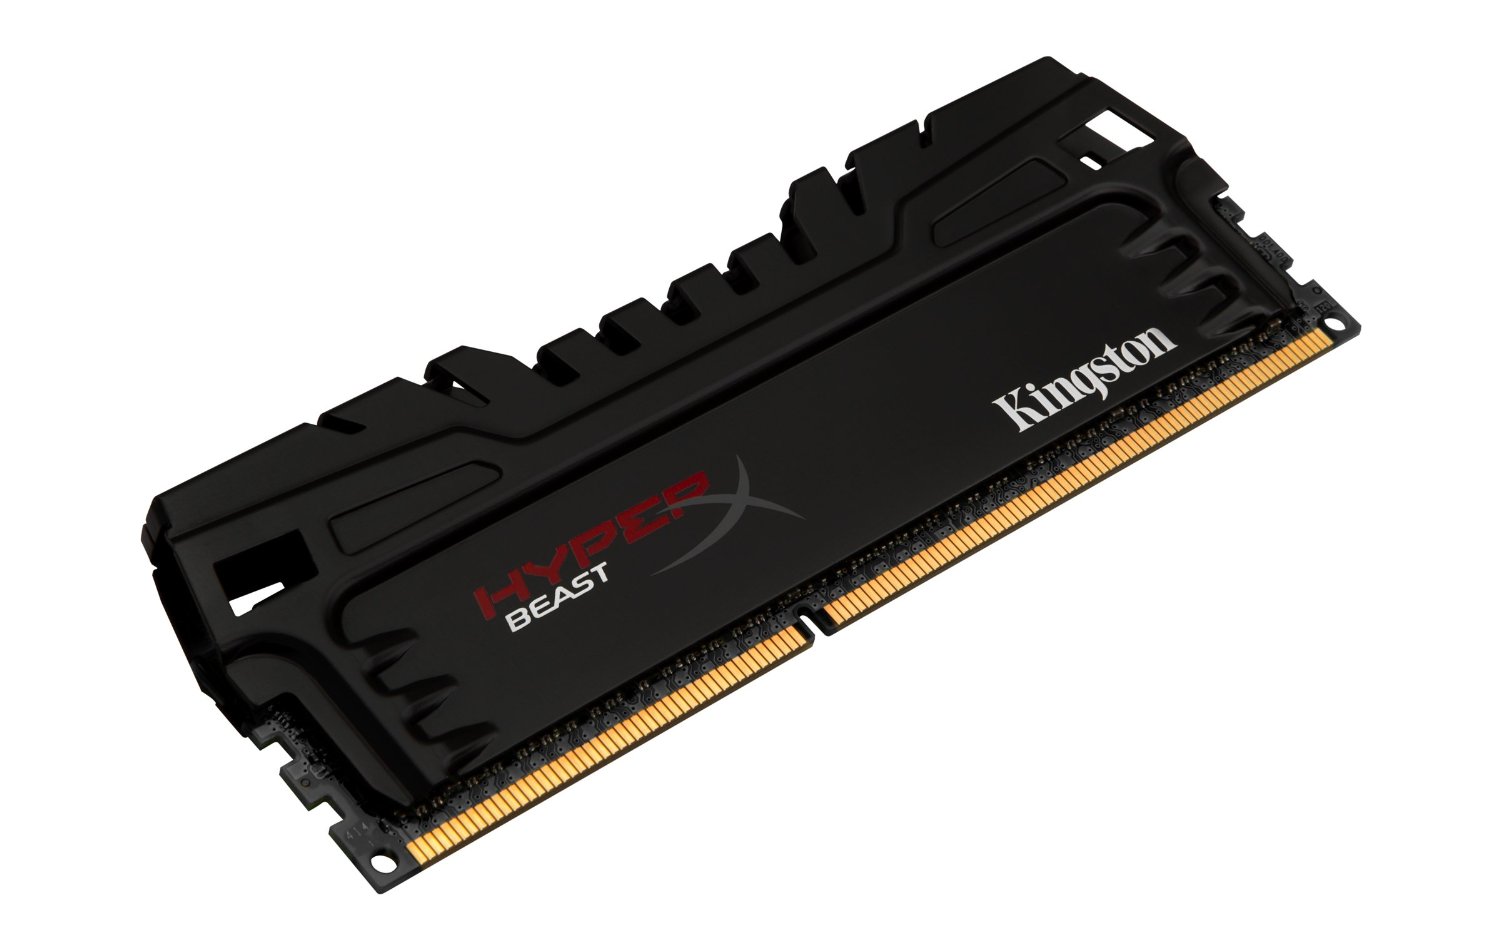 Kingston Technology HyperX Beast 16GB Desktop Memory | Tech Nuggets